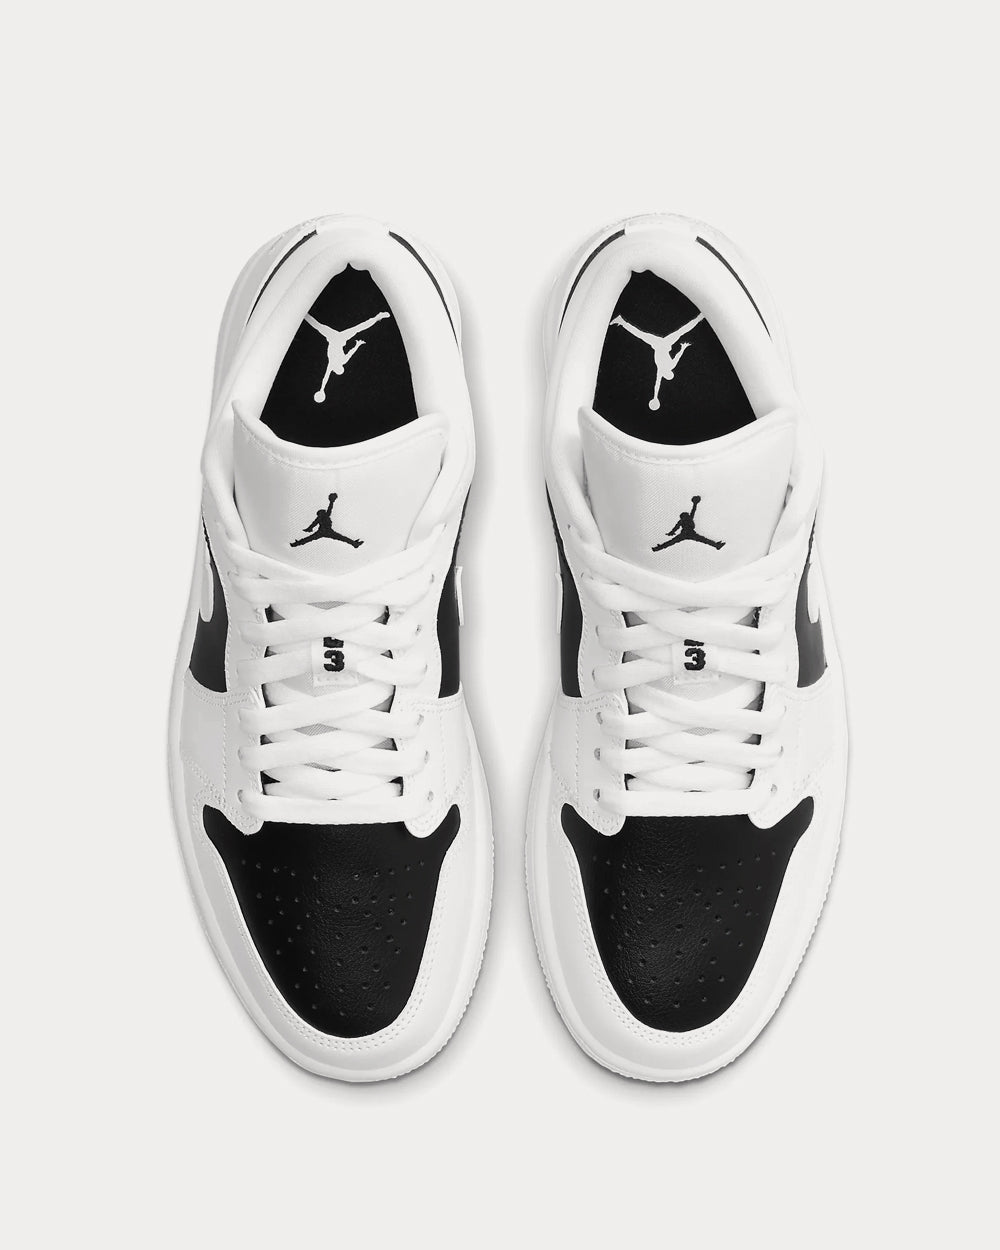 Jordan - Air Jordan 1 White / Black / White Low Top Sneakers